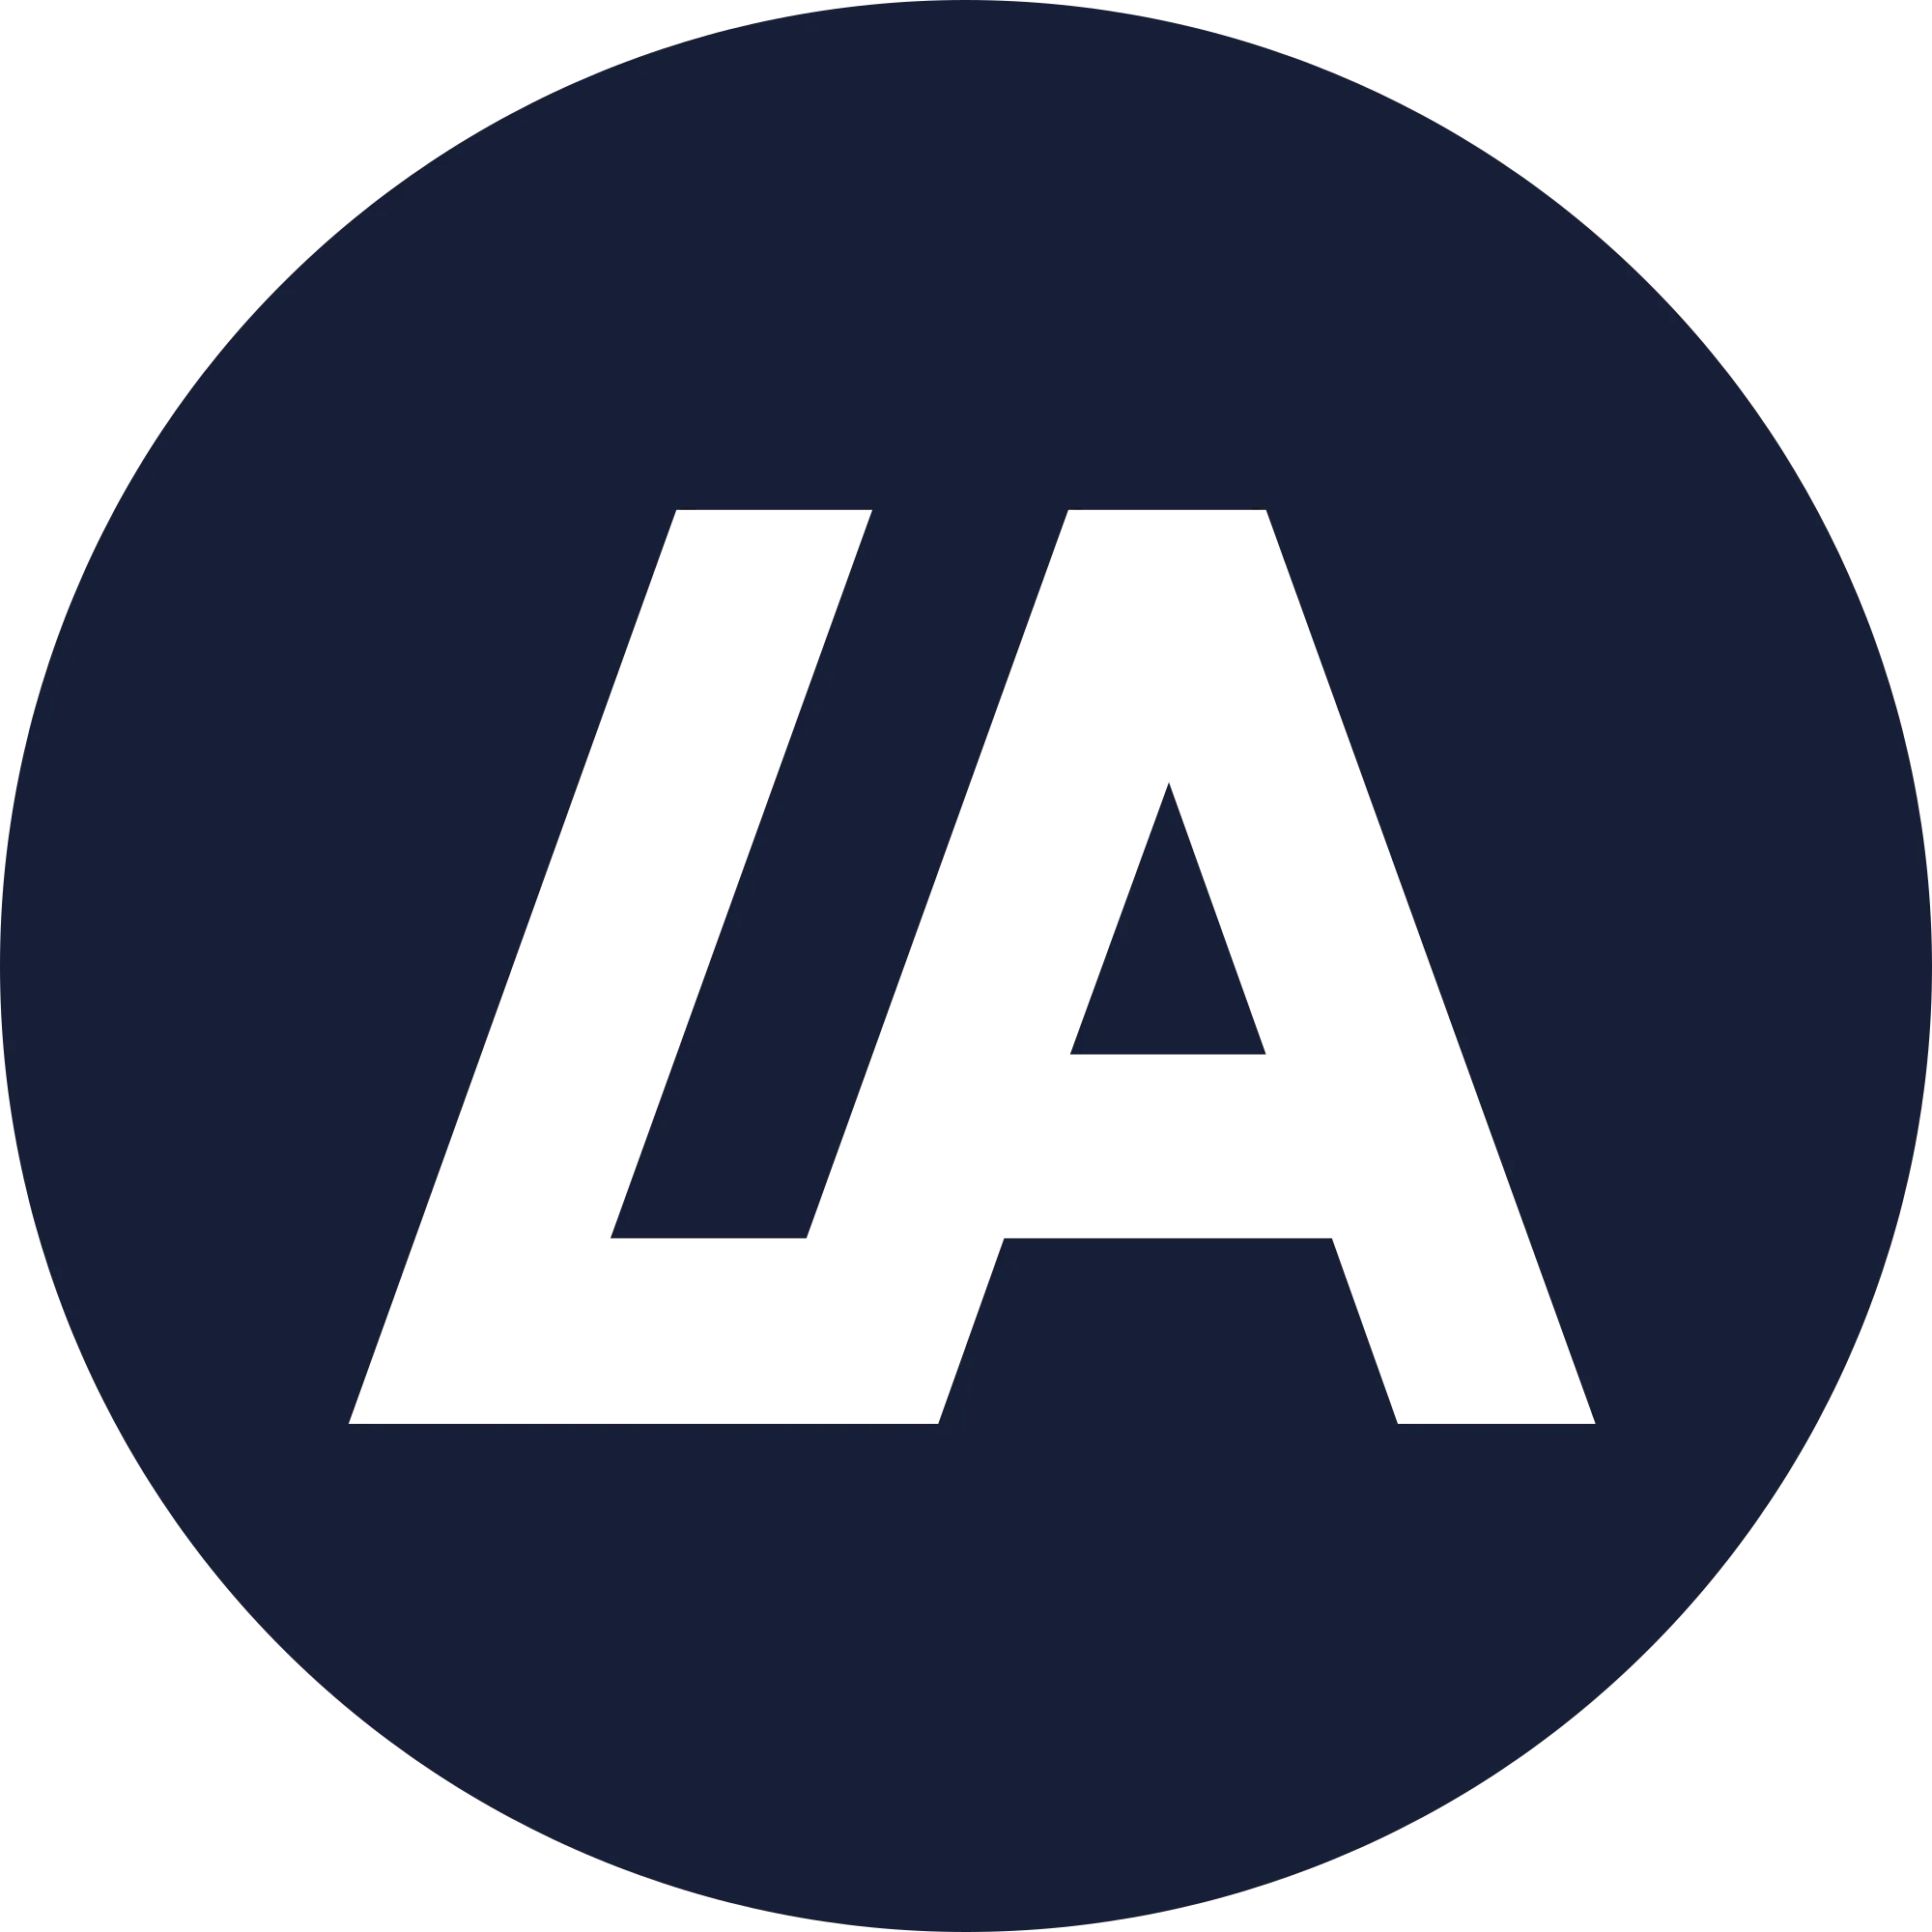 LATOKEN (LA) logo